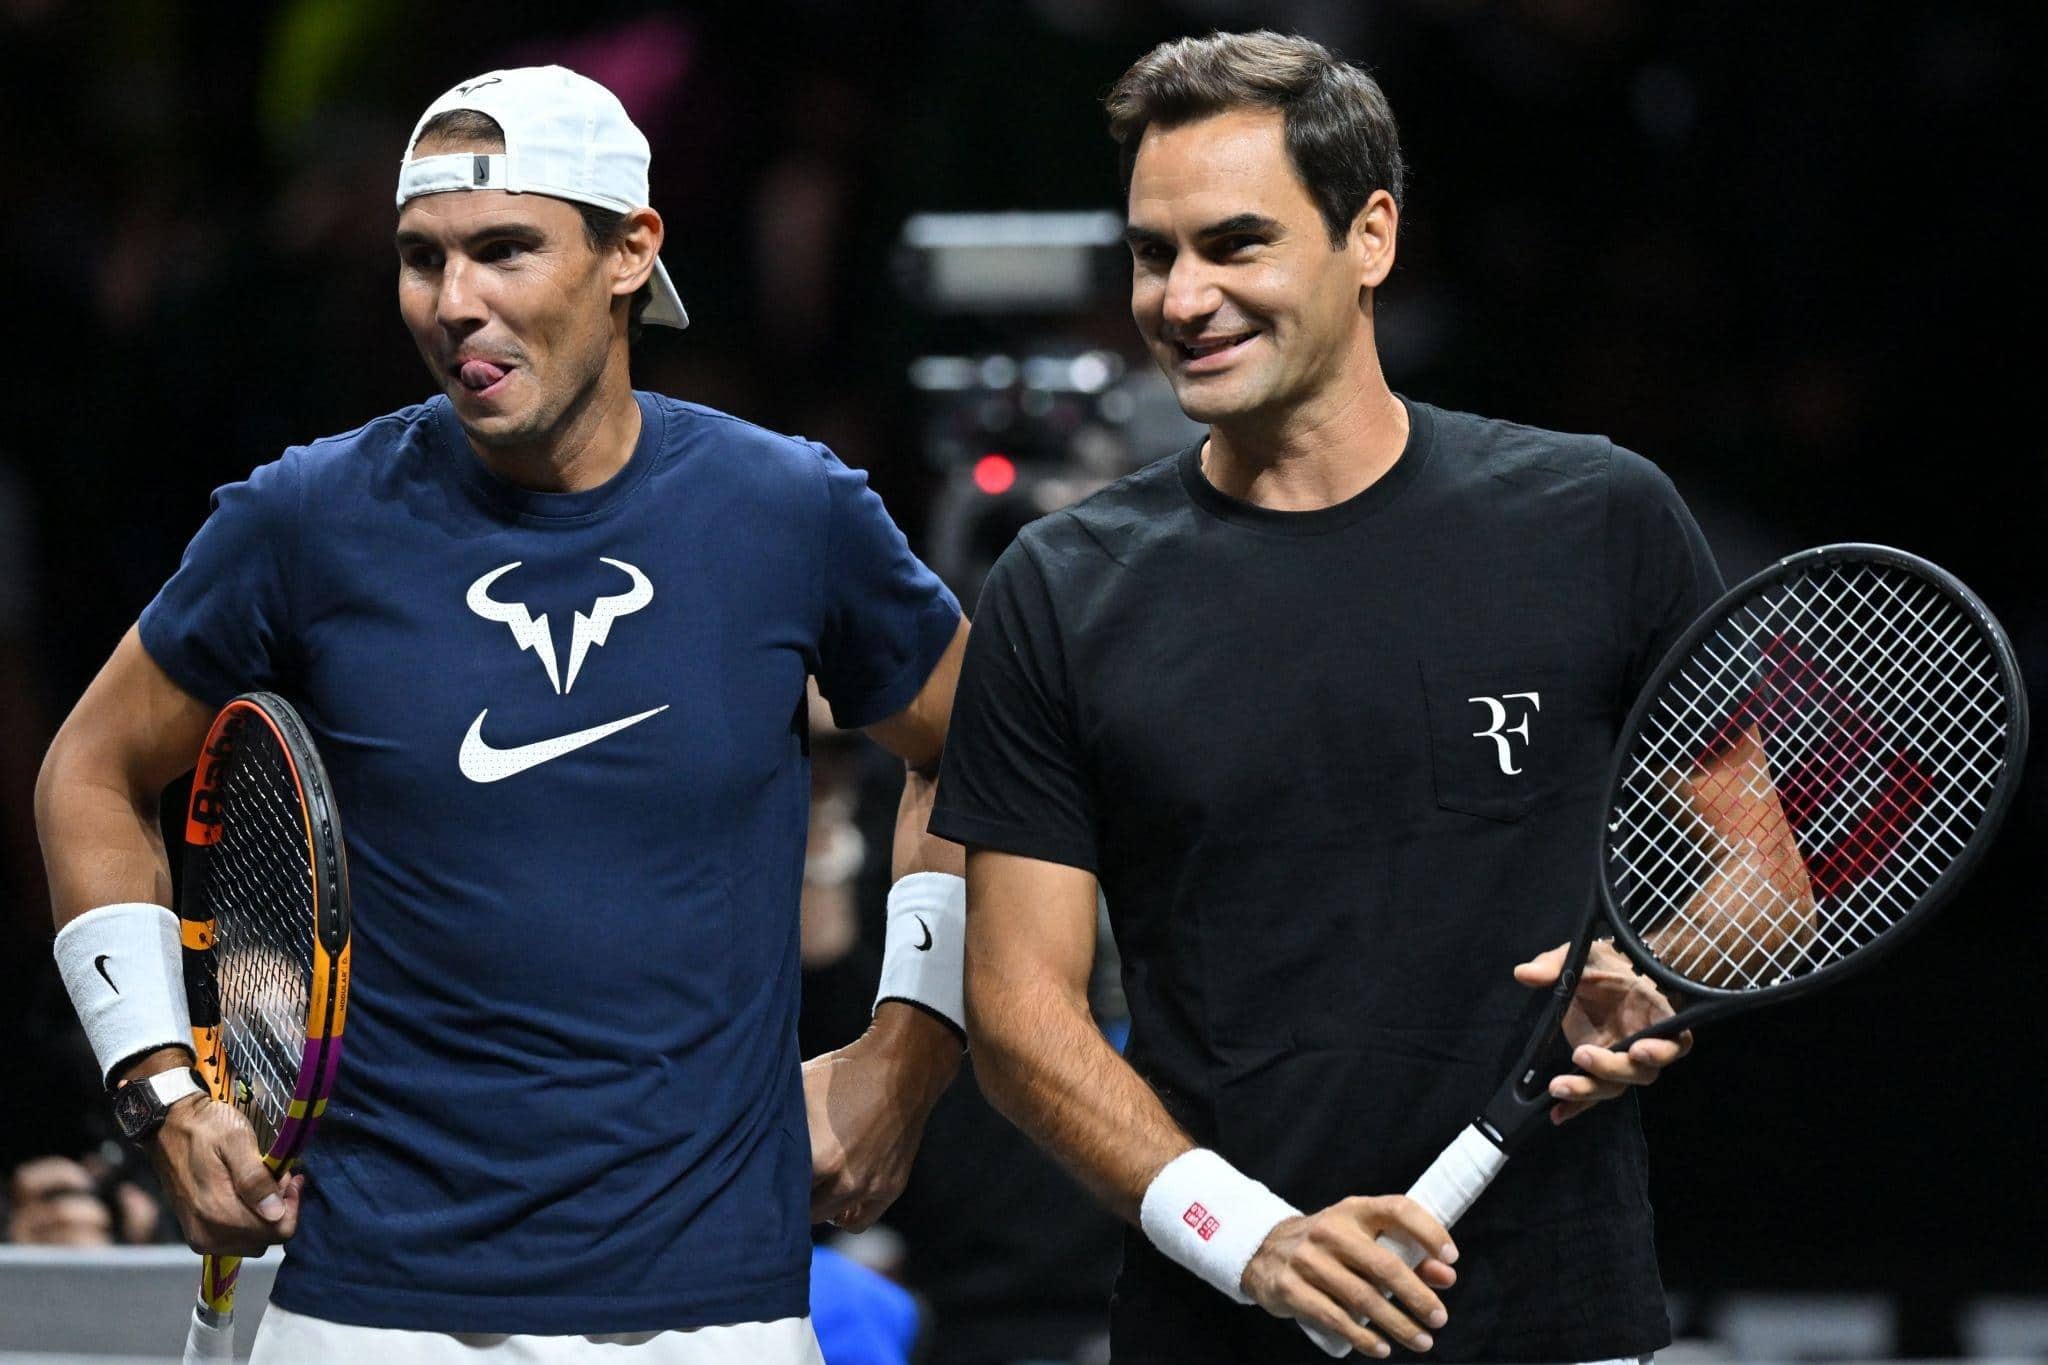 Roger Federer announced retirement last week